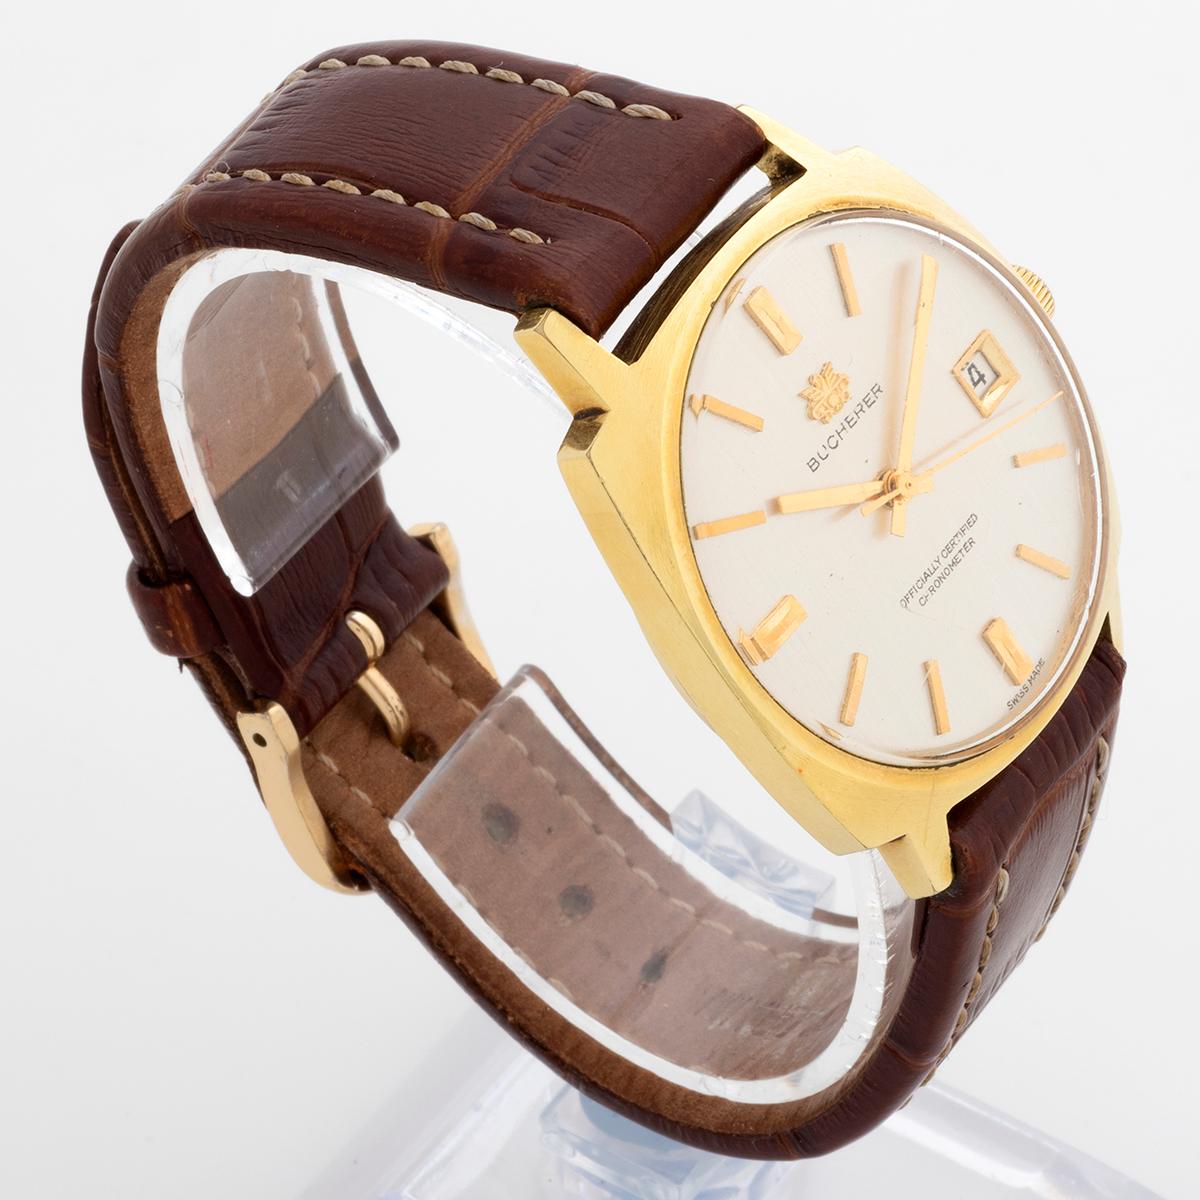 Cette montre automatique Bucherer est dotée d'un boîtier en acier inoxydable recouvert d'or de 25 mm avec la couronne, de 40,5 mm de long, d'un fond de boîtier vissé, d'un cadran en plexiglas avec le logo Bucherer appliqué et d'un chronomètre